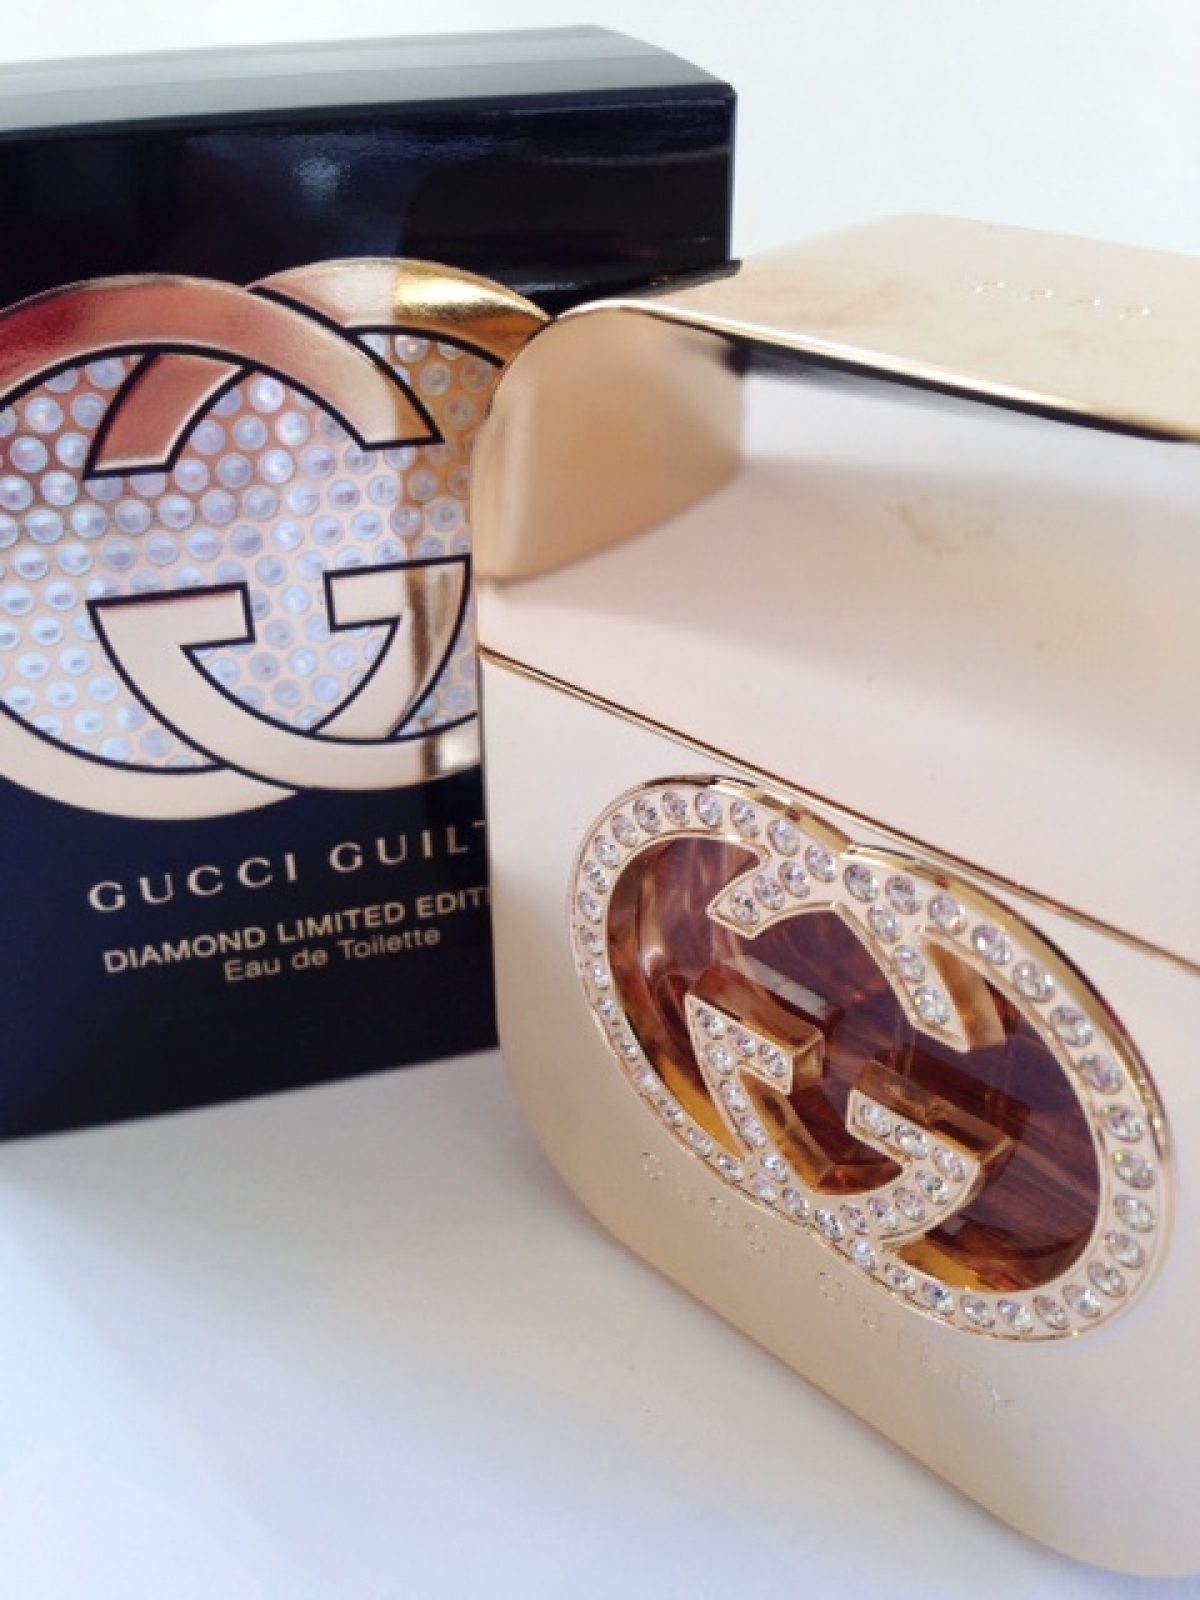 Gucci Guilty Diamond Edition